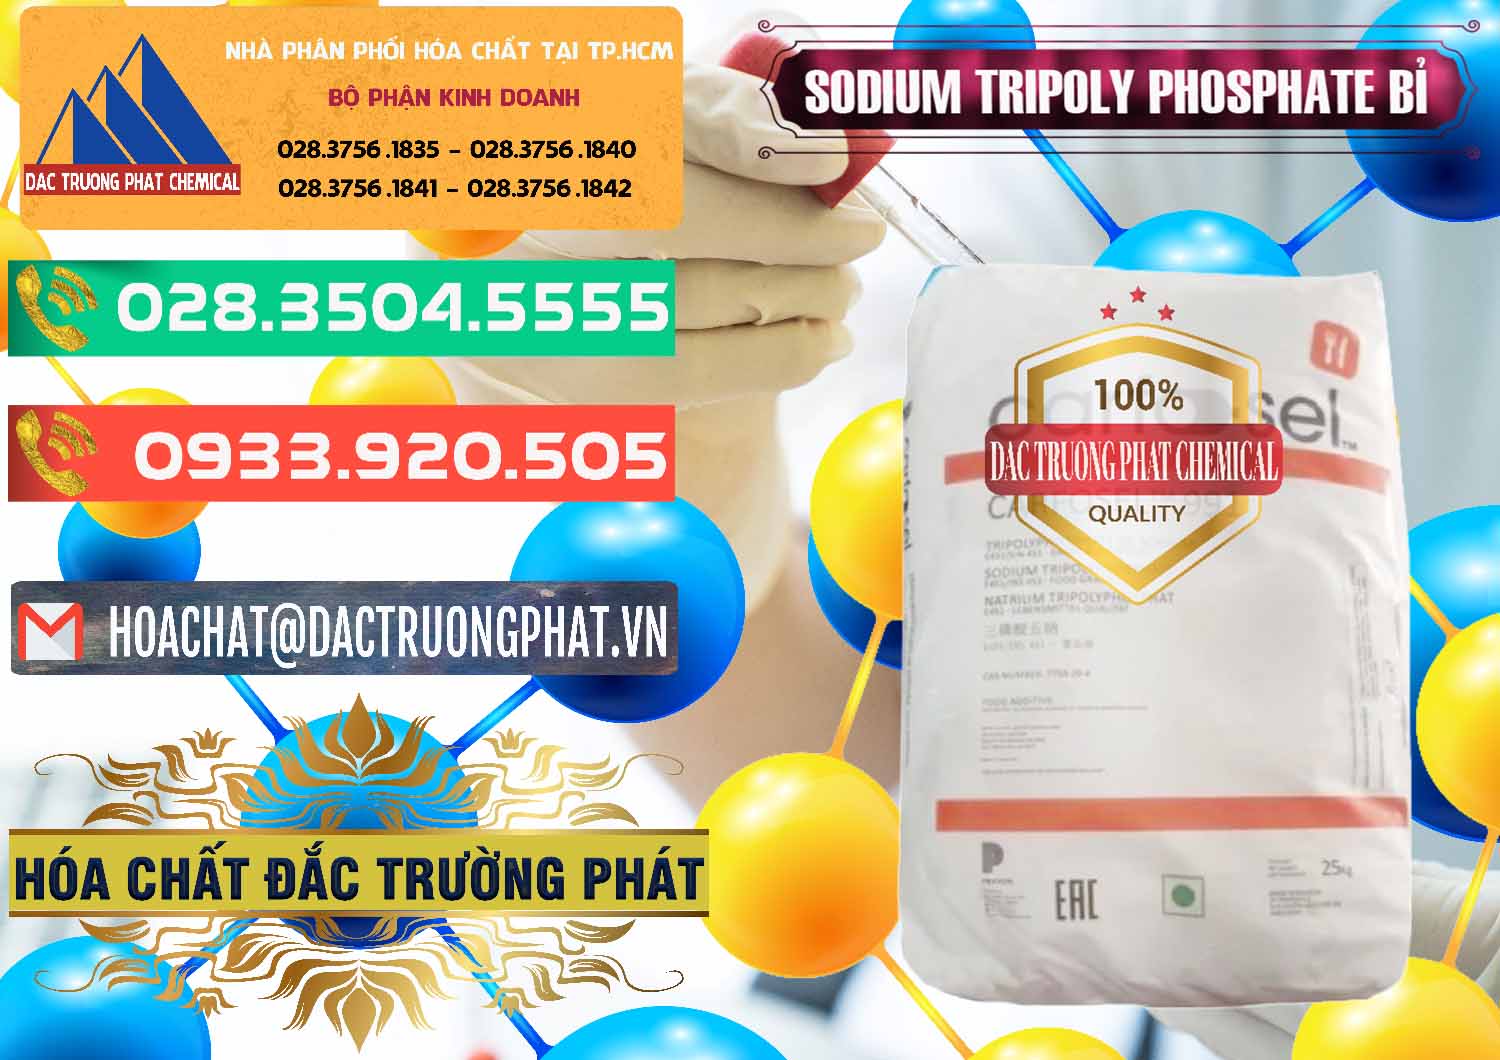 Đơn vị chuyên bán - phân phối Sodium Tripoly Phosphate - STPP Carfosel 991 Bỉ Belgium - 0429 - Công ty bán & cung cấp hóa chất tại TP.HCM - congtyhoachat.com.vn